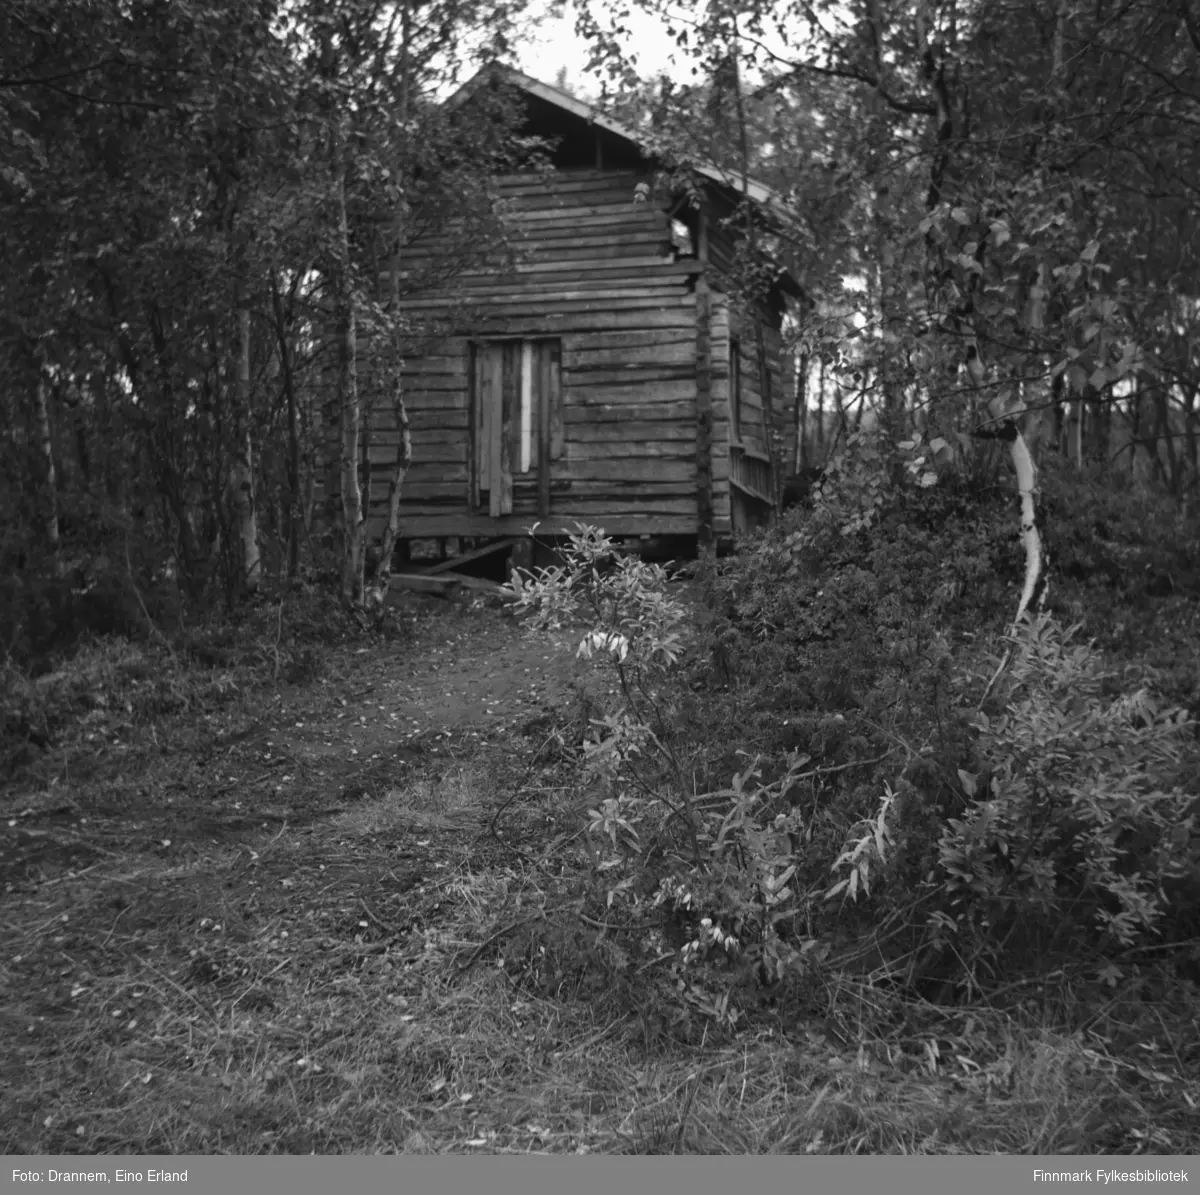 En hytte står i skogen i Neiden. Det kan være familien Drannems hytte.